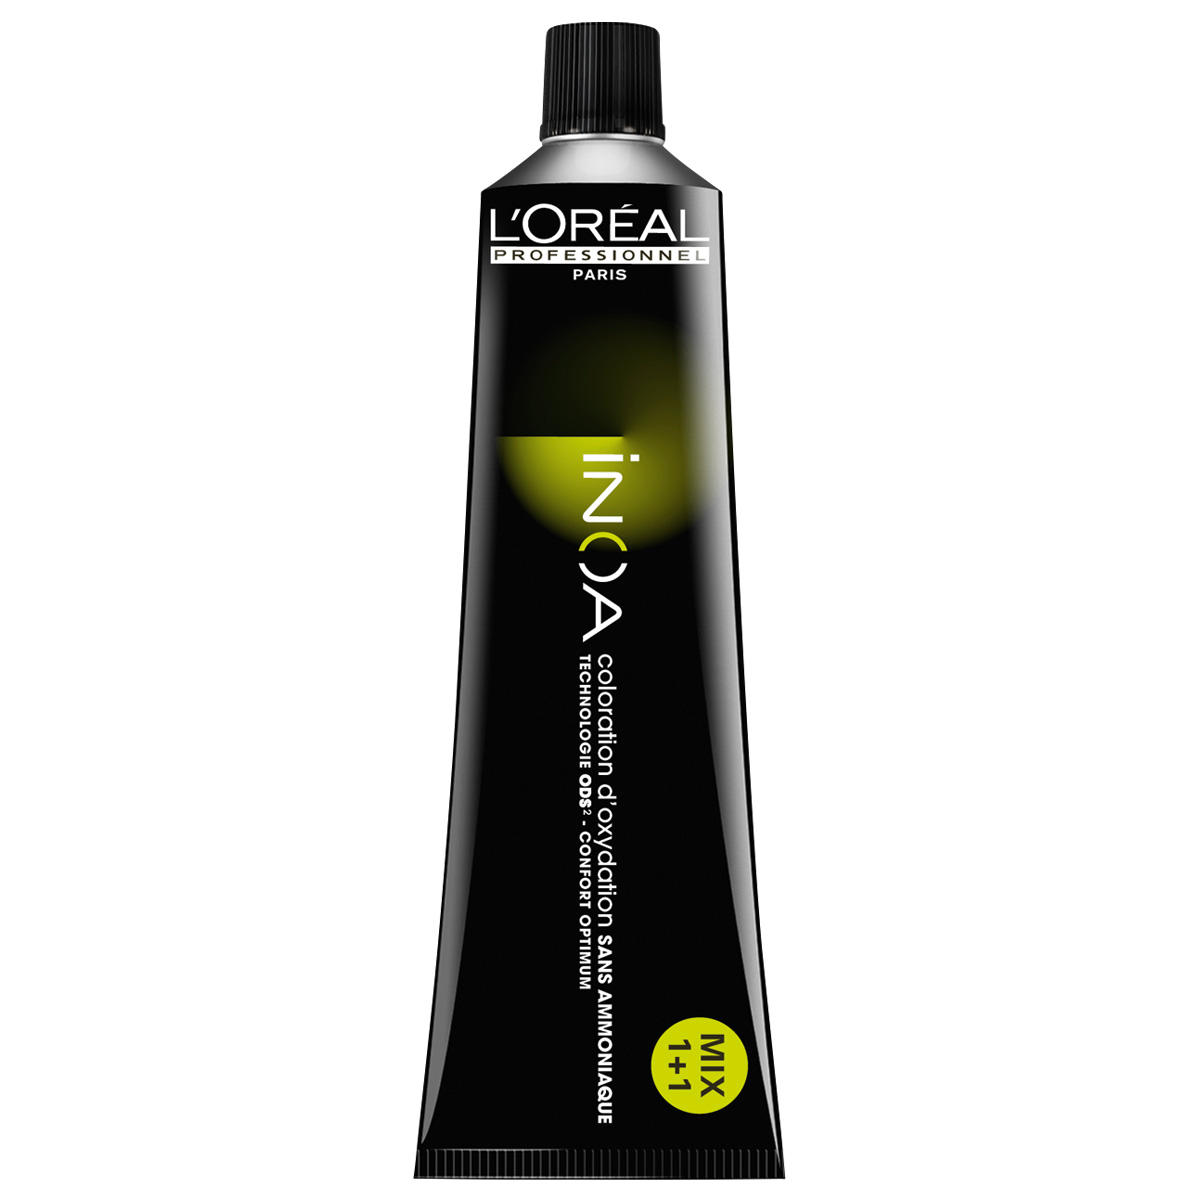 L'Oréal Professionnel Paris Coloration 9.1 Very Light Blonde Ash, Tube 60 ml - 1